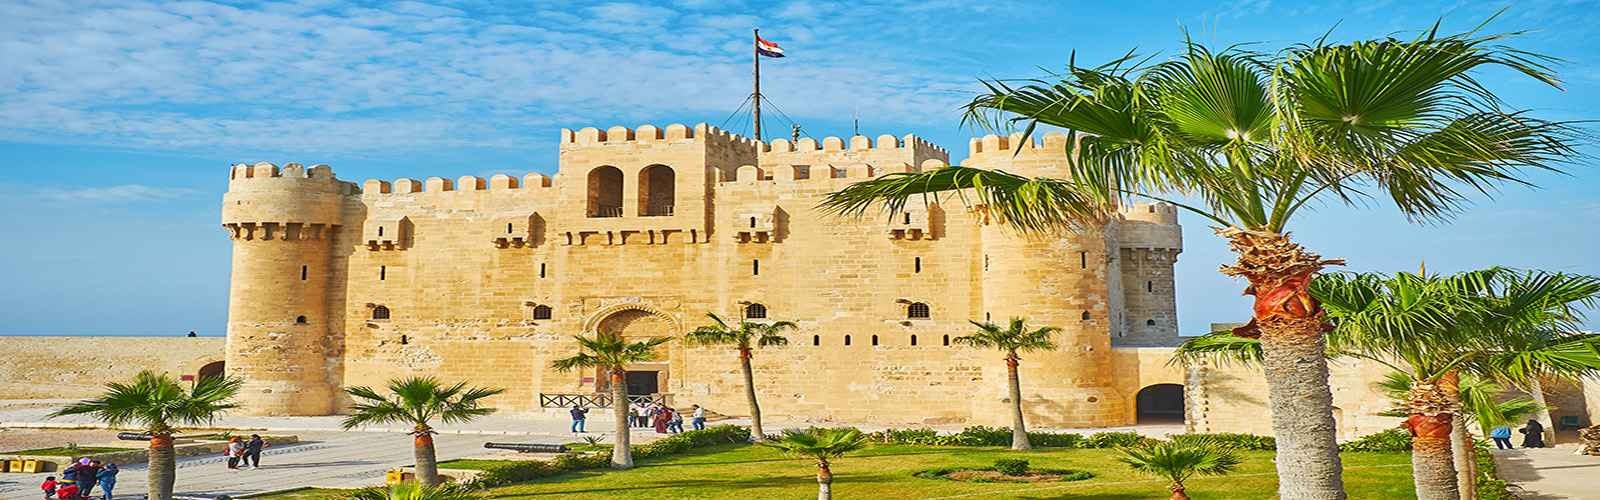 Cidadela de Qaitbay